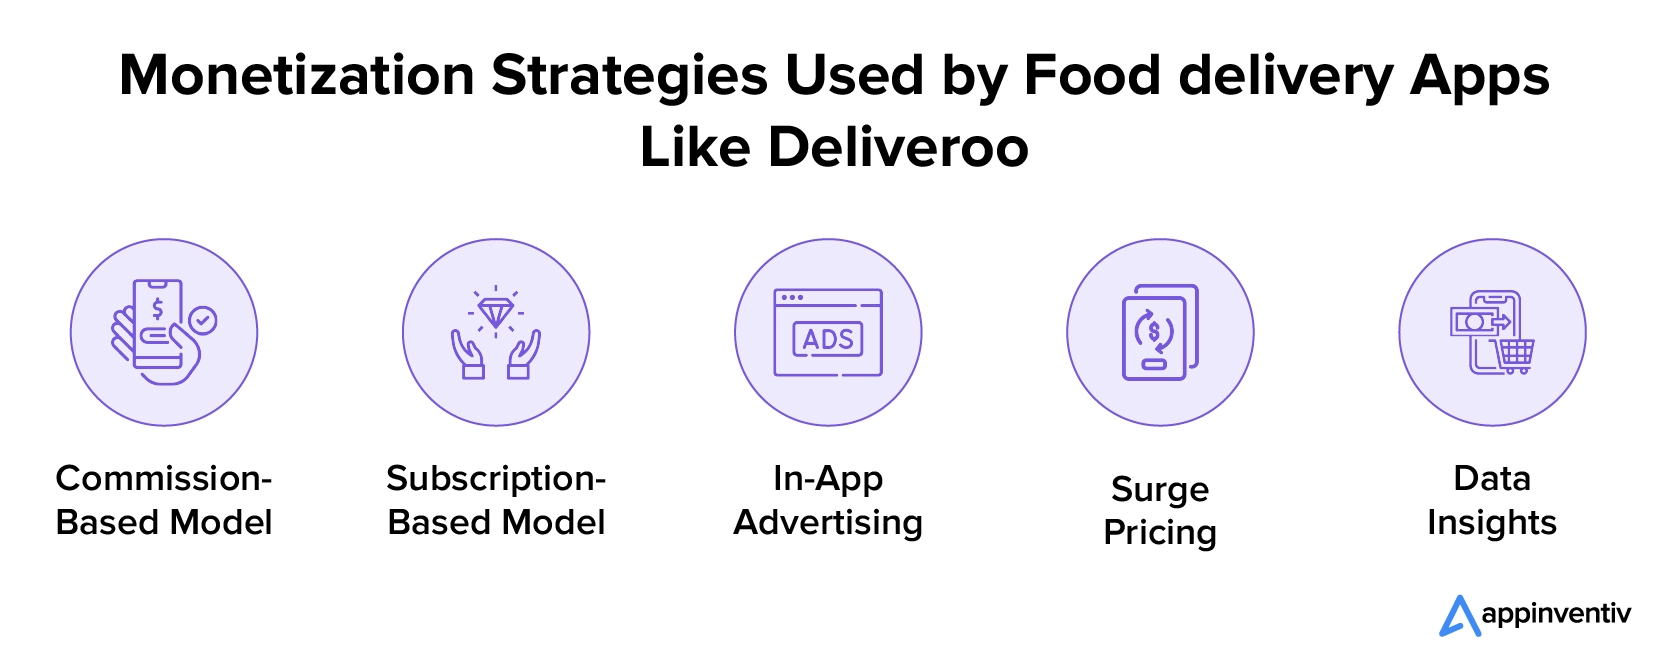 Strategie di monetizzazione utilizzate dalle app di consegna cibo come Deliveroo